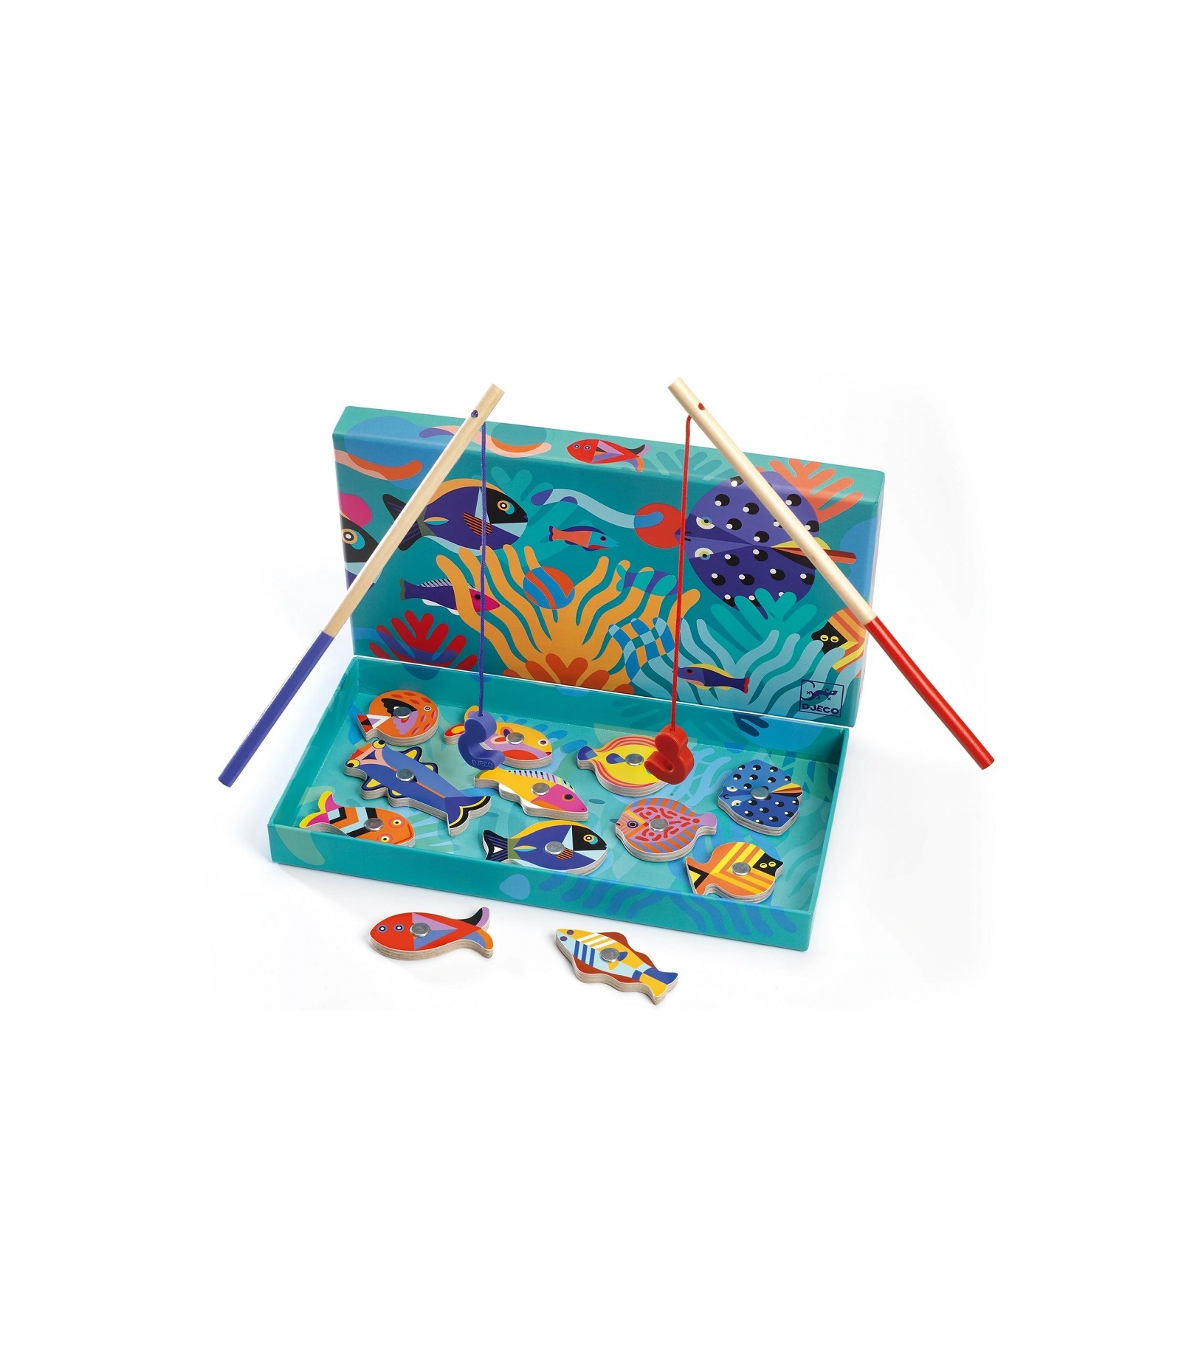 Offrez ce jeu de pêche magnétique Fishing Graphic à votre enfant !